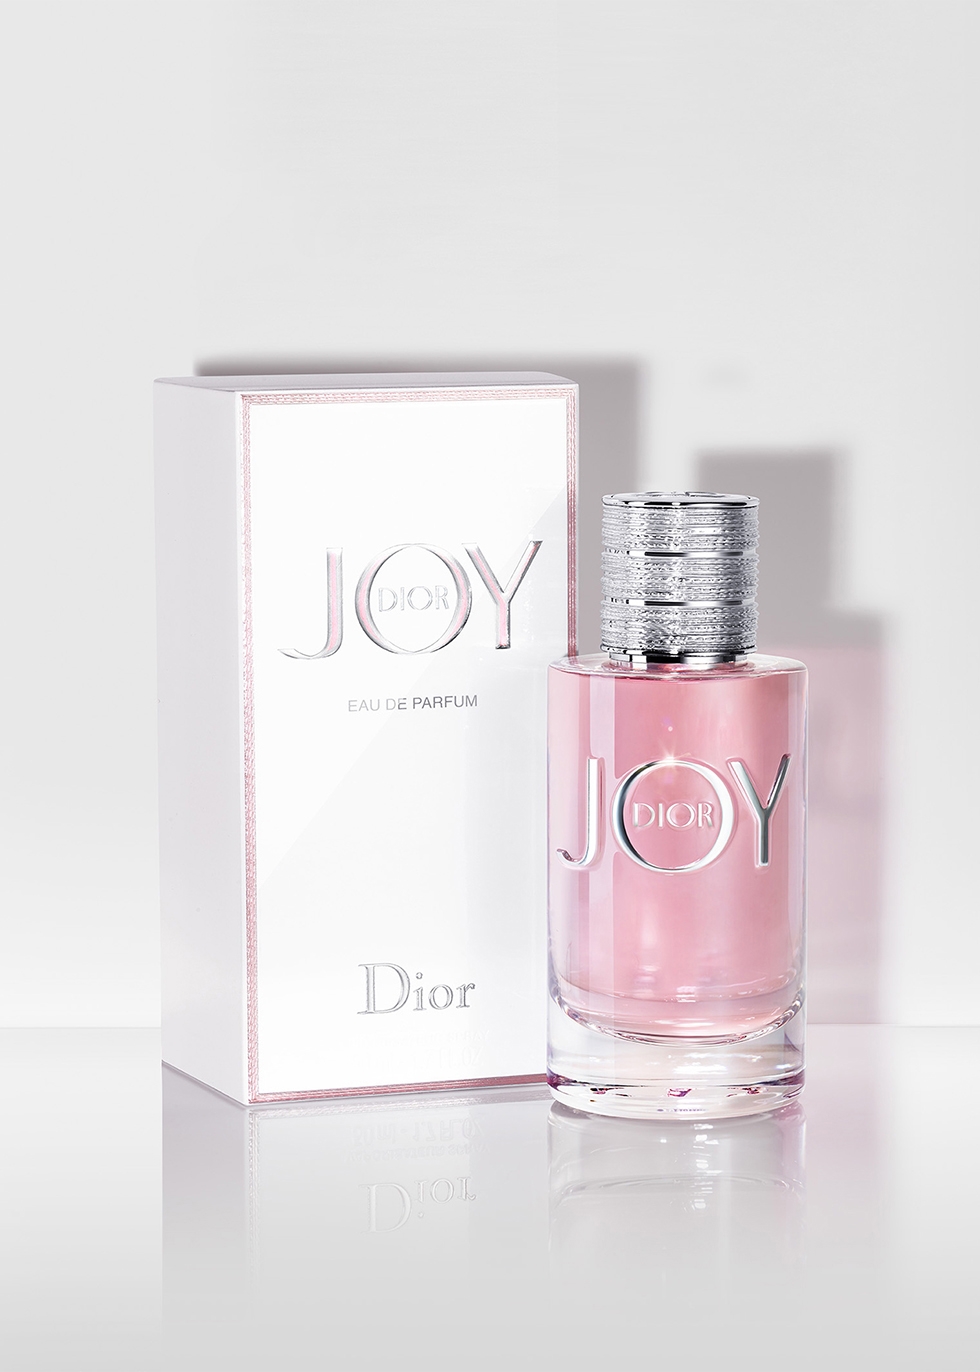 joy eau de parfum 30ml